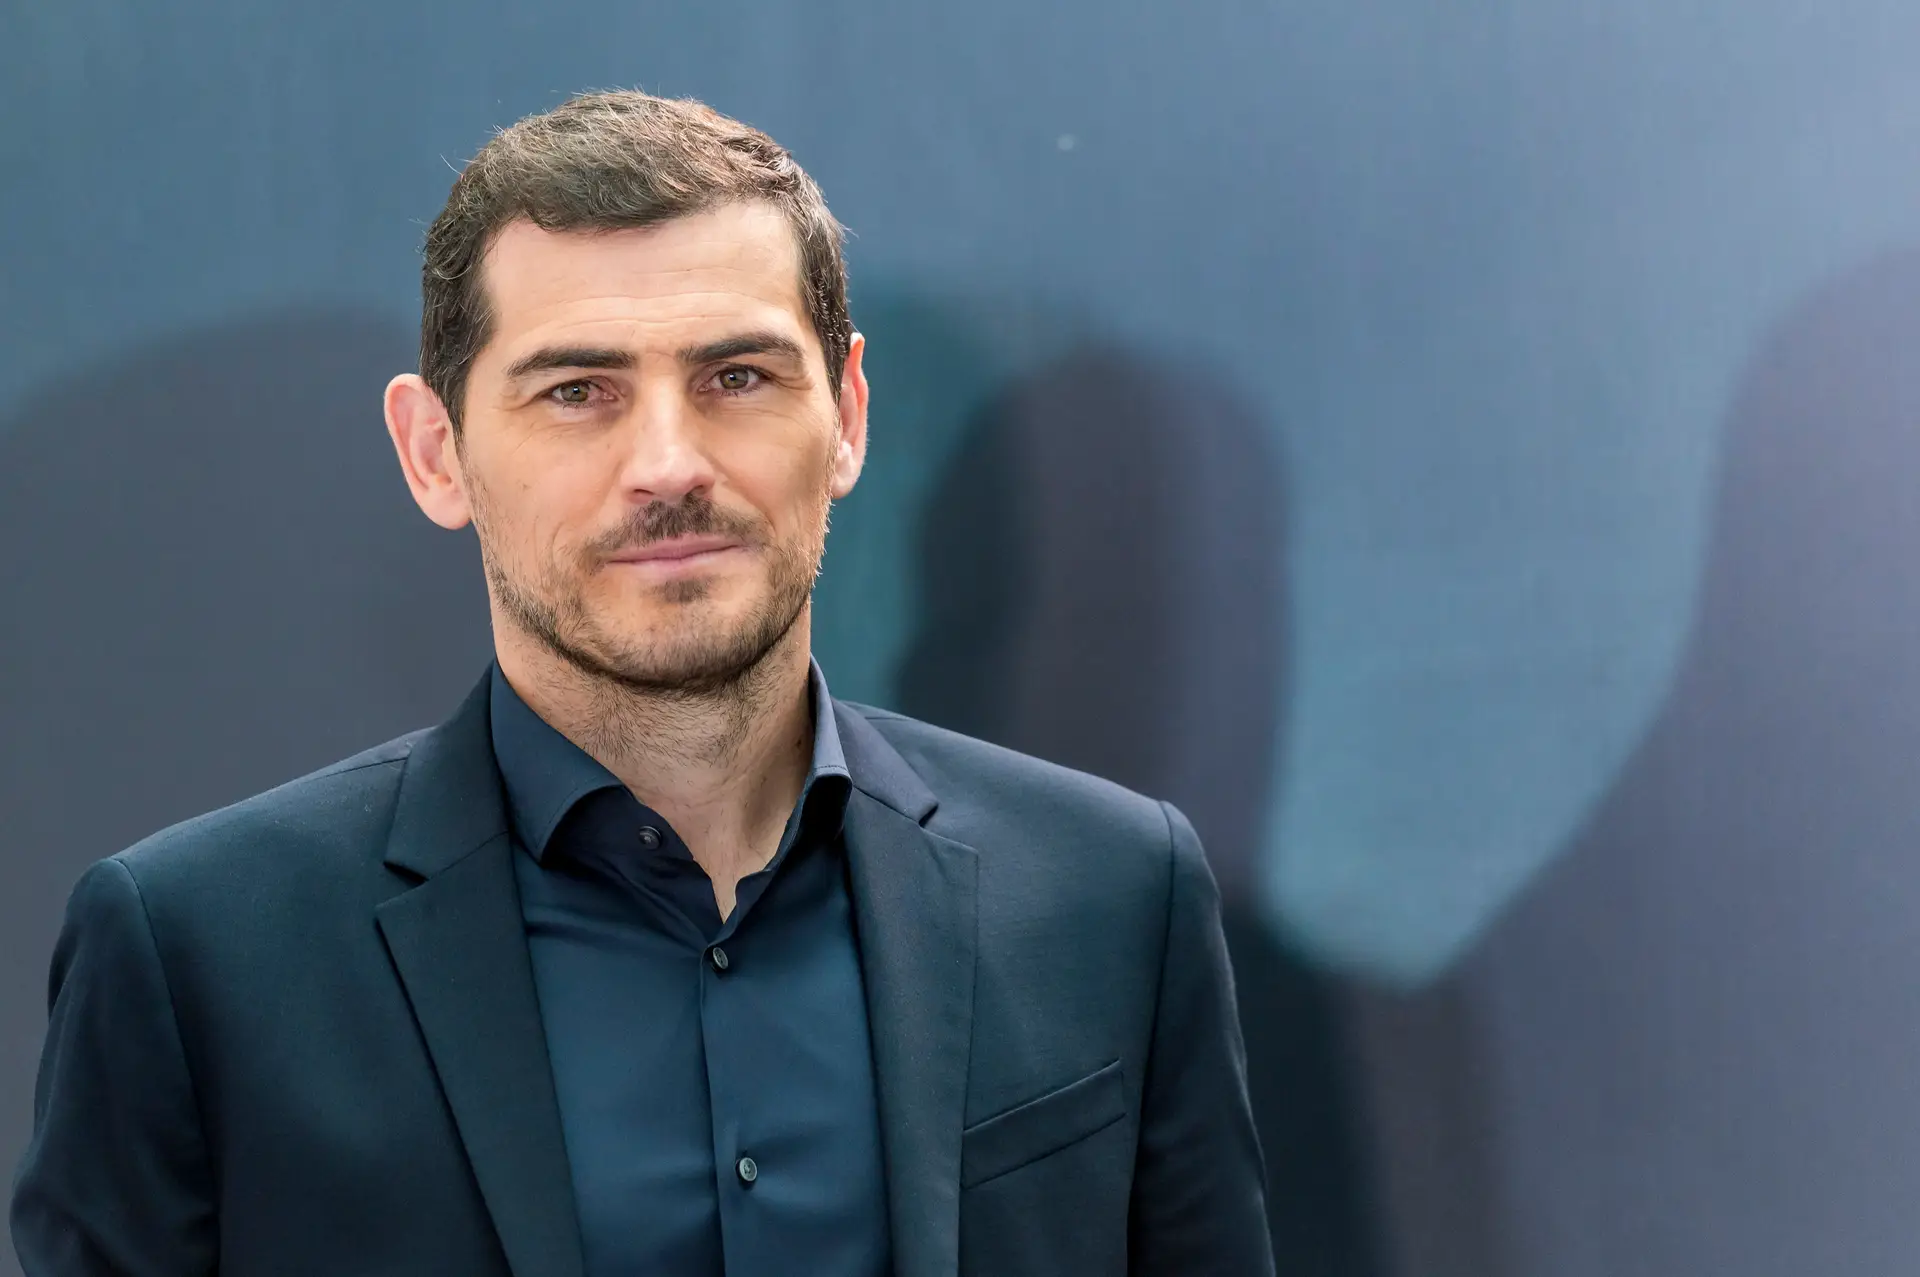 Falsa revelação de homossexualidade de Iker Casillas